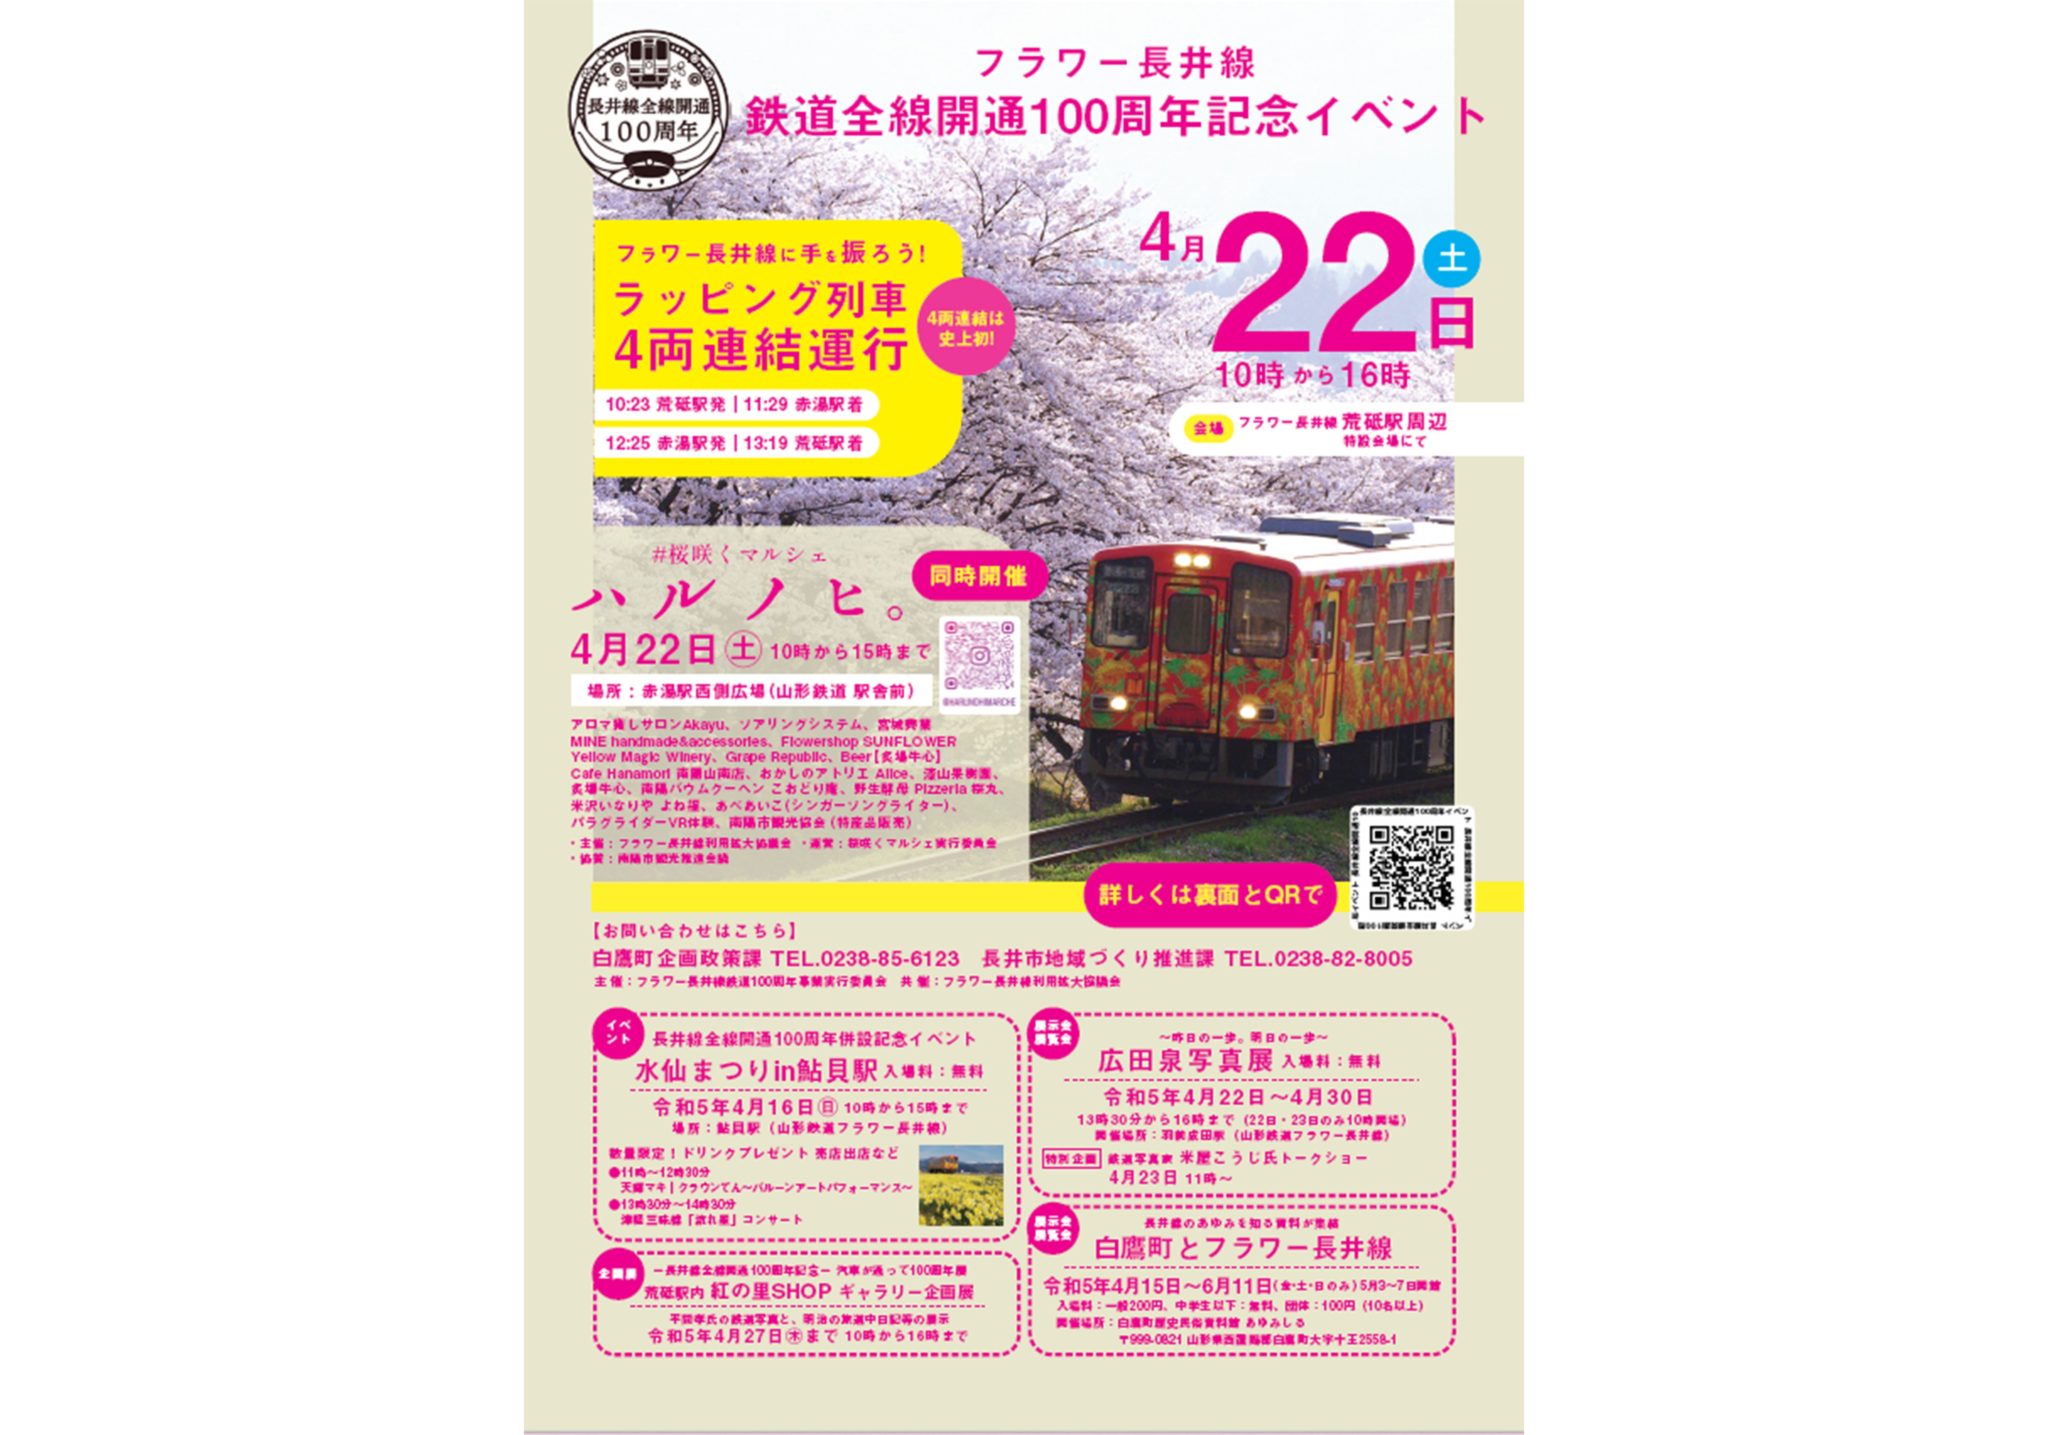 フラワー長井線 鉄道全線開通100周年記念イベント